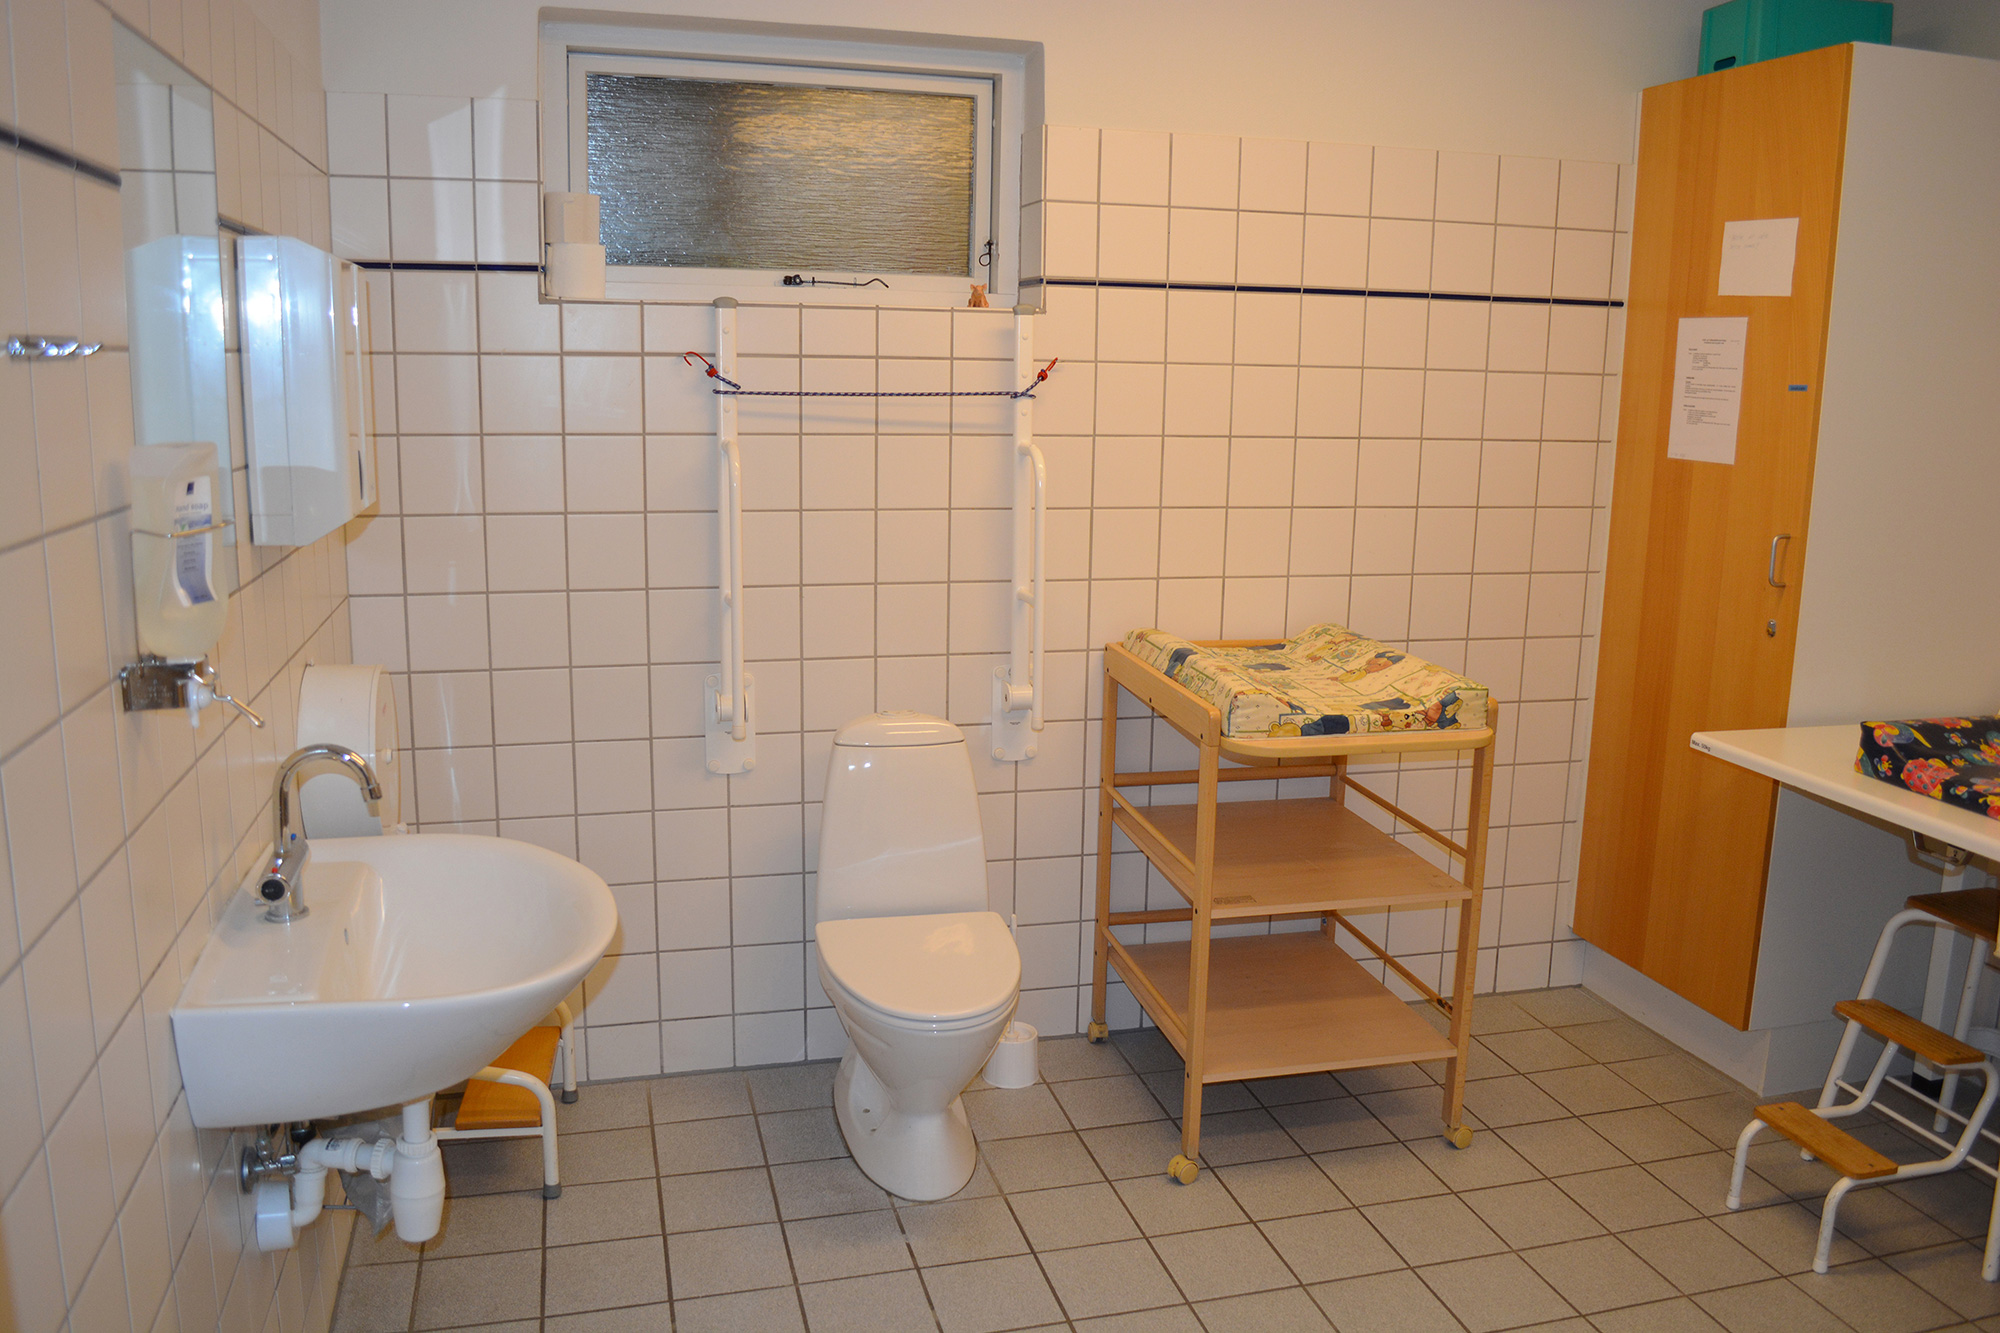 forsamlingshuset byder på et godt handicap toilet med pulsebord